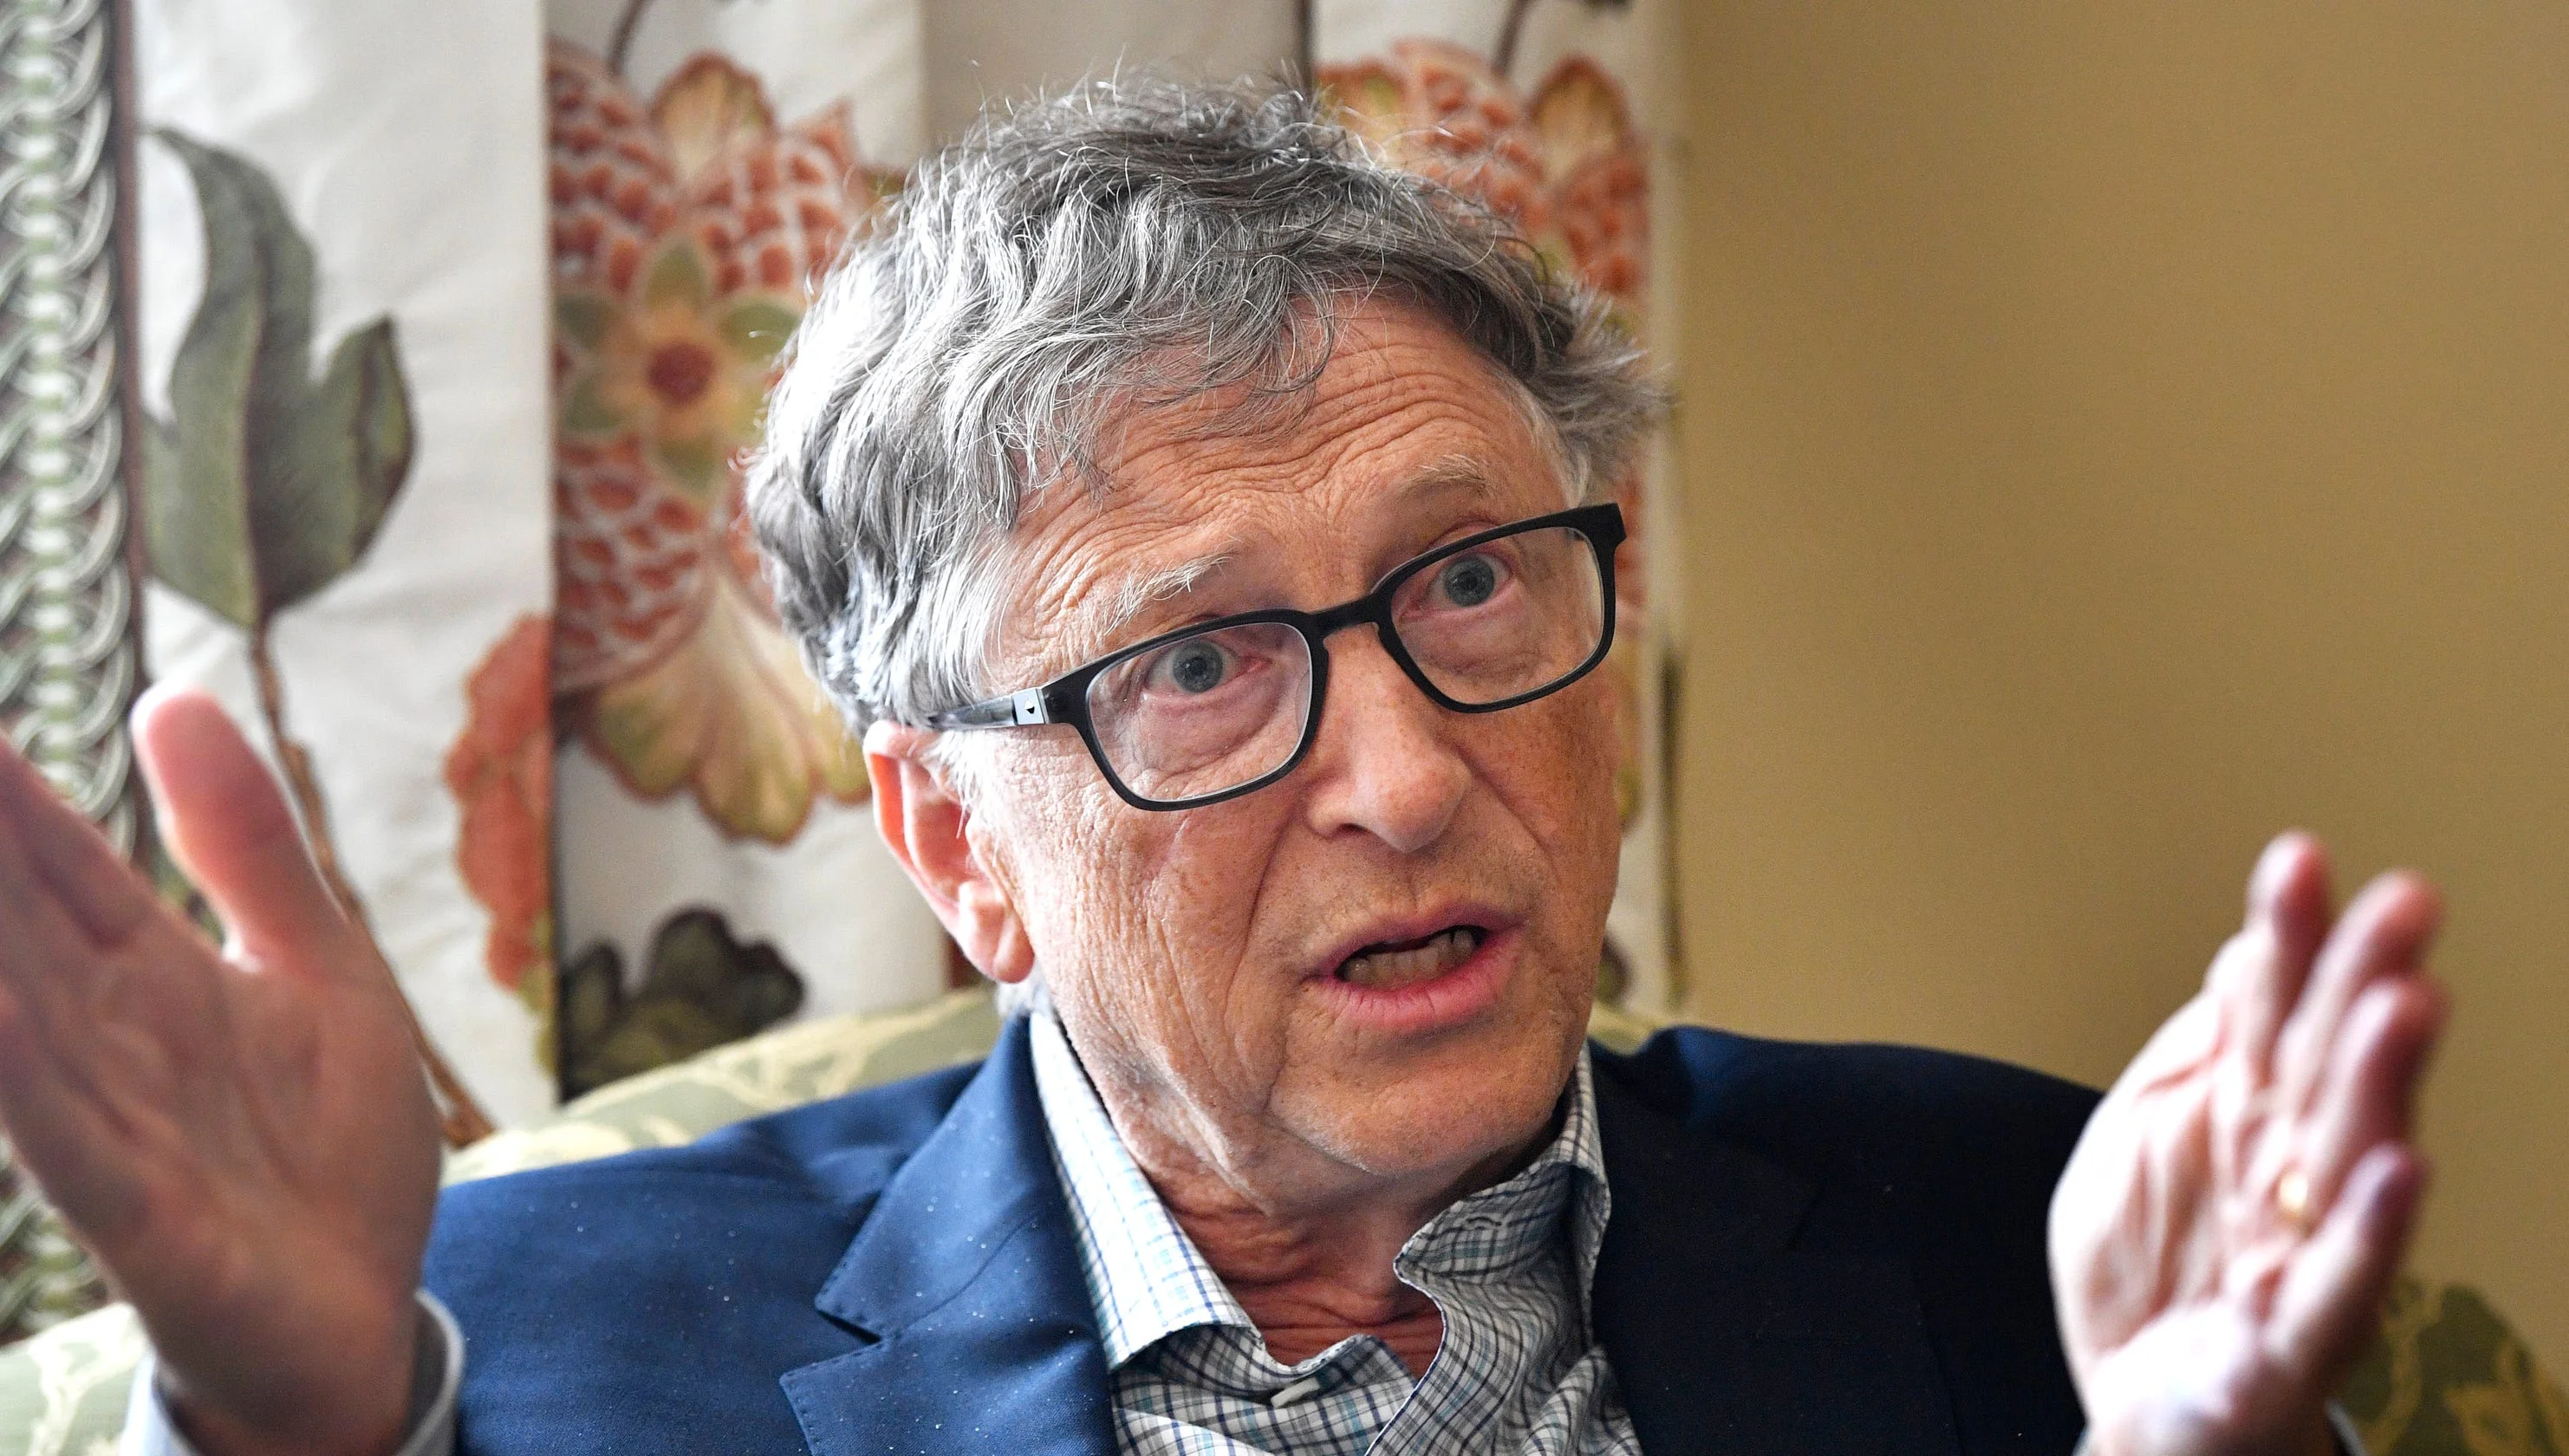 Билл Гейтс назвал свою главную ошибку, допущенную в управлении Microsoft - фото 1